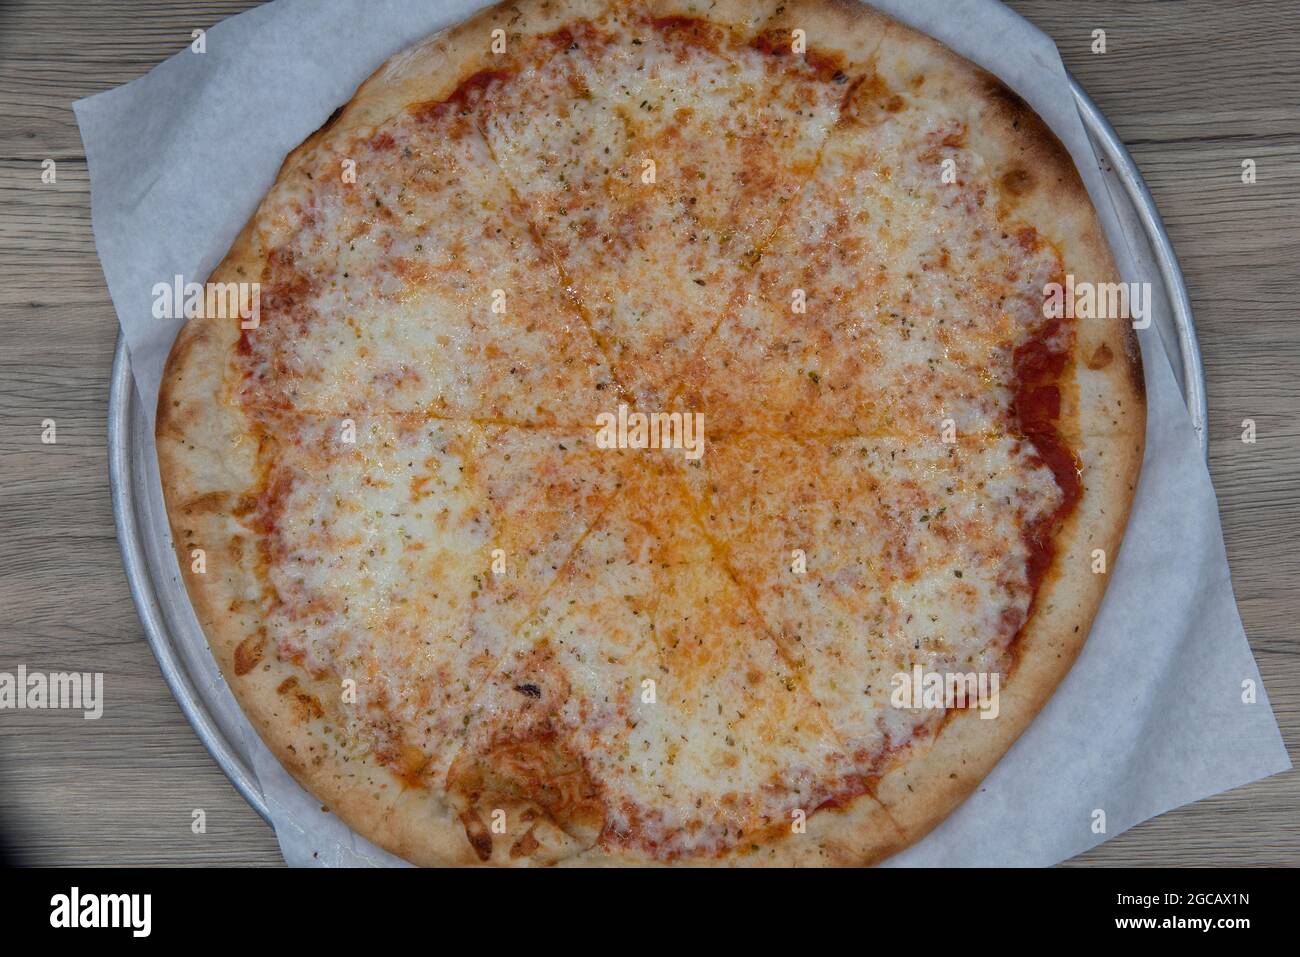 Vue en hauteur d'une pizza au fromage chargée de garnitures de légumes et d'une croûte croustillante pour un repas complet en famille. Banque D'Images